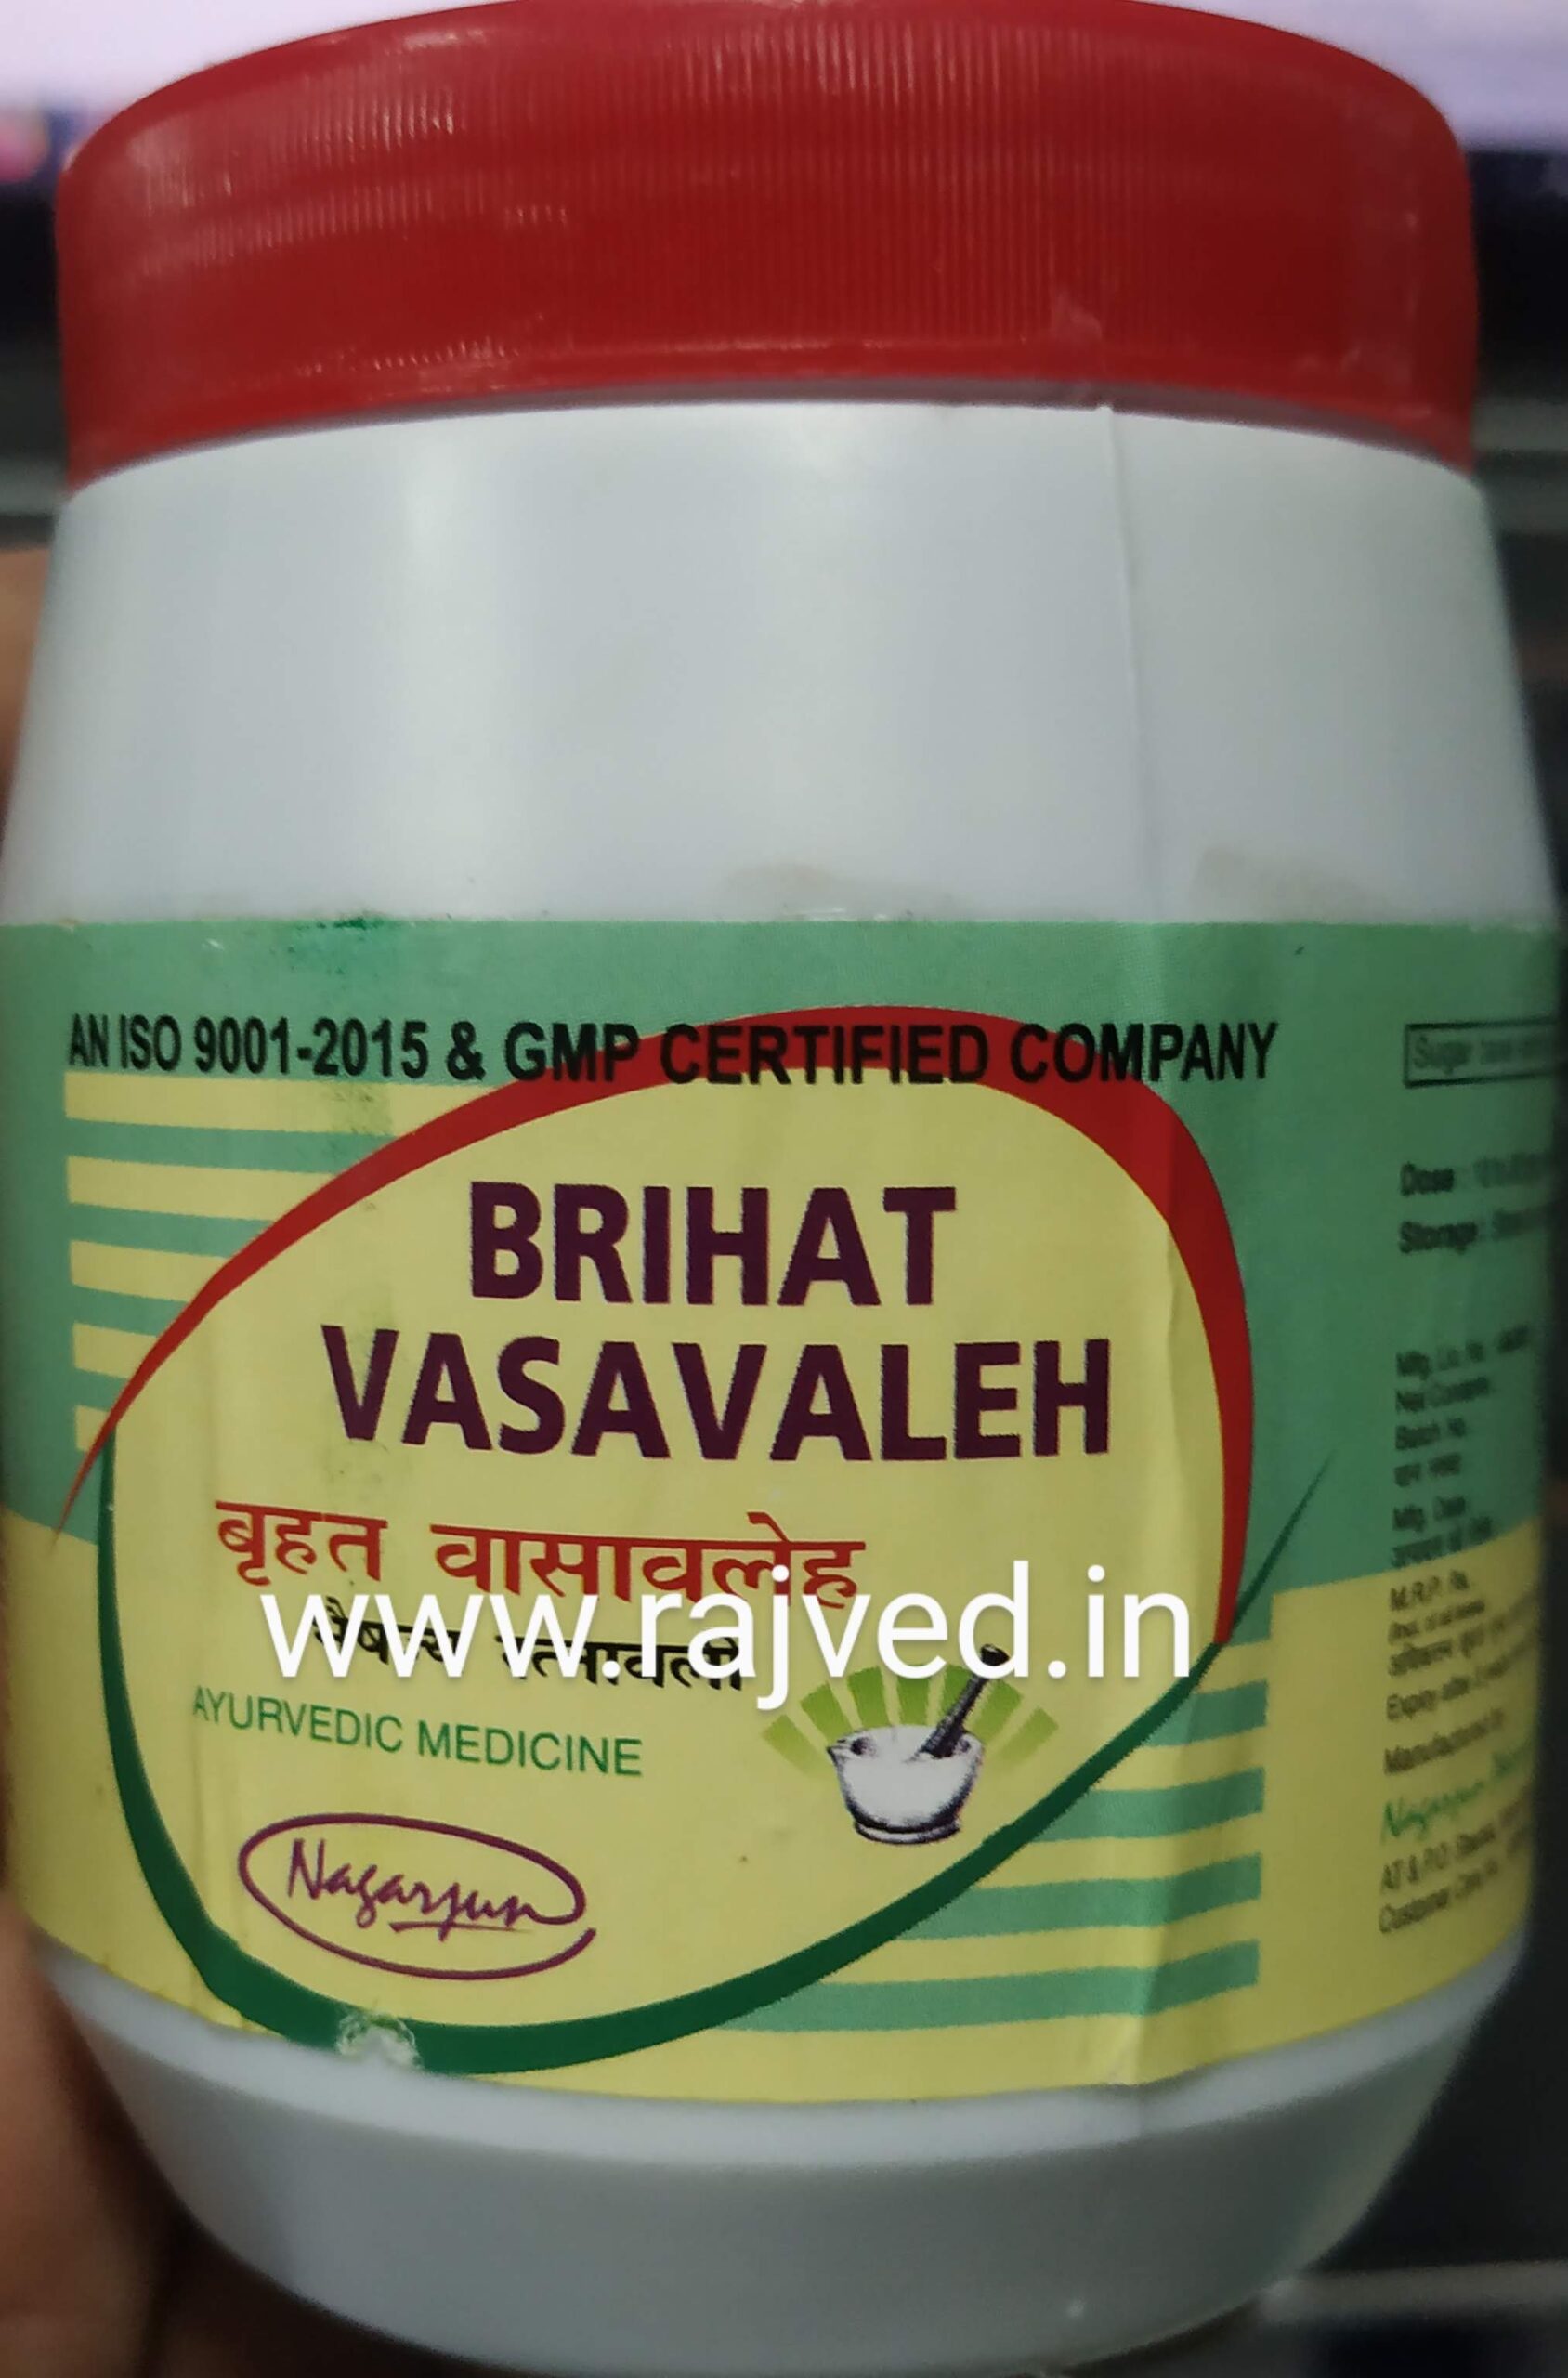 vasavleh brihat 200 gm upto 20% off Nagarjun Pharma Gujarat